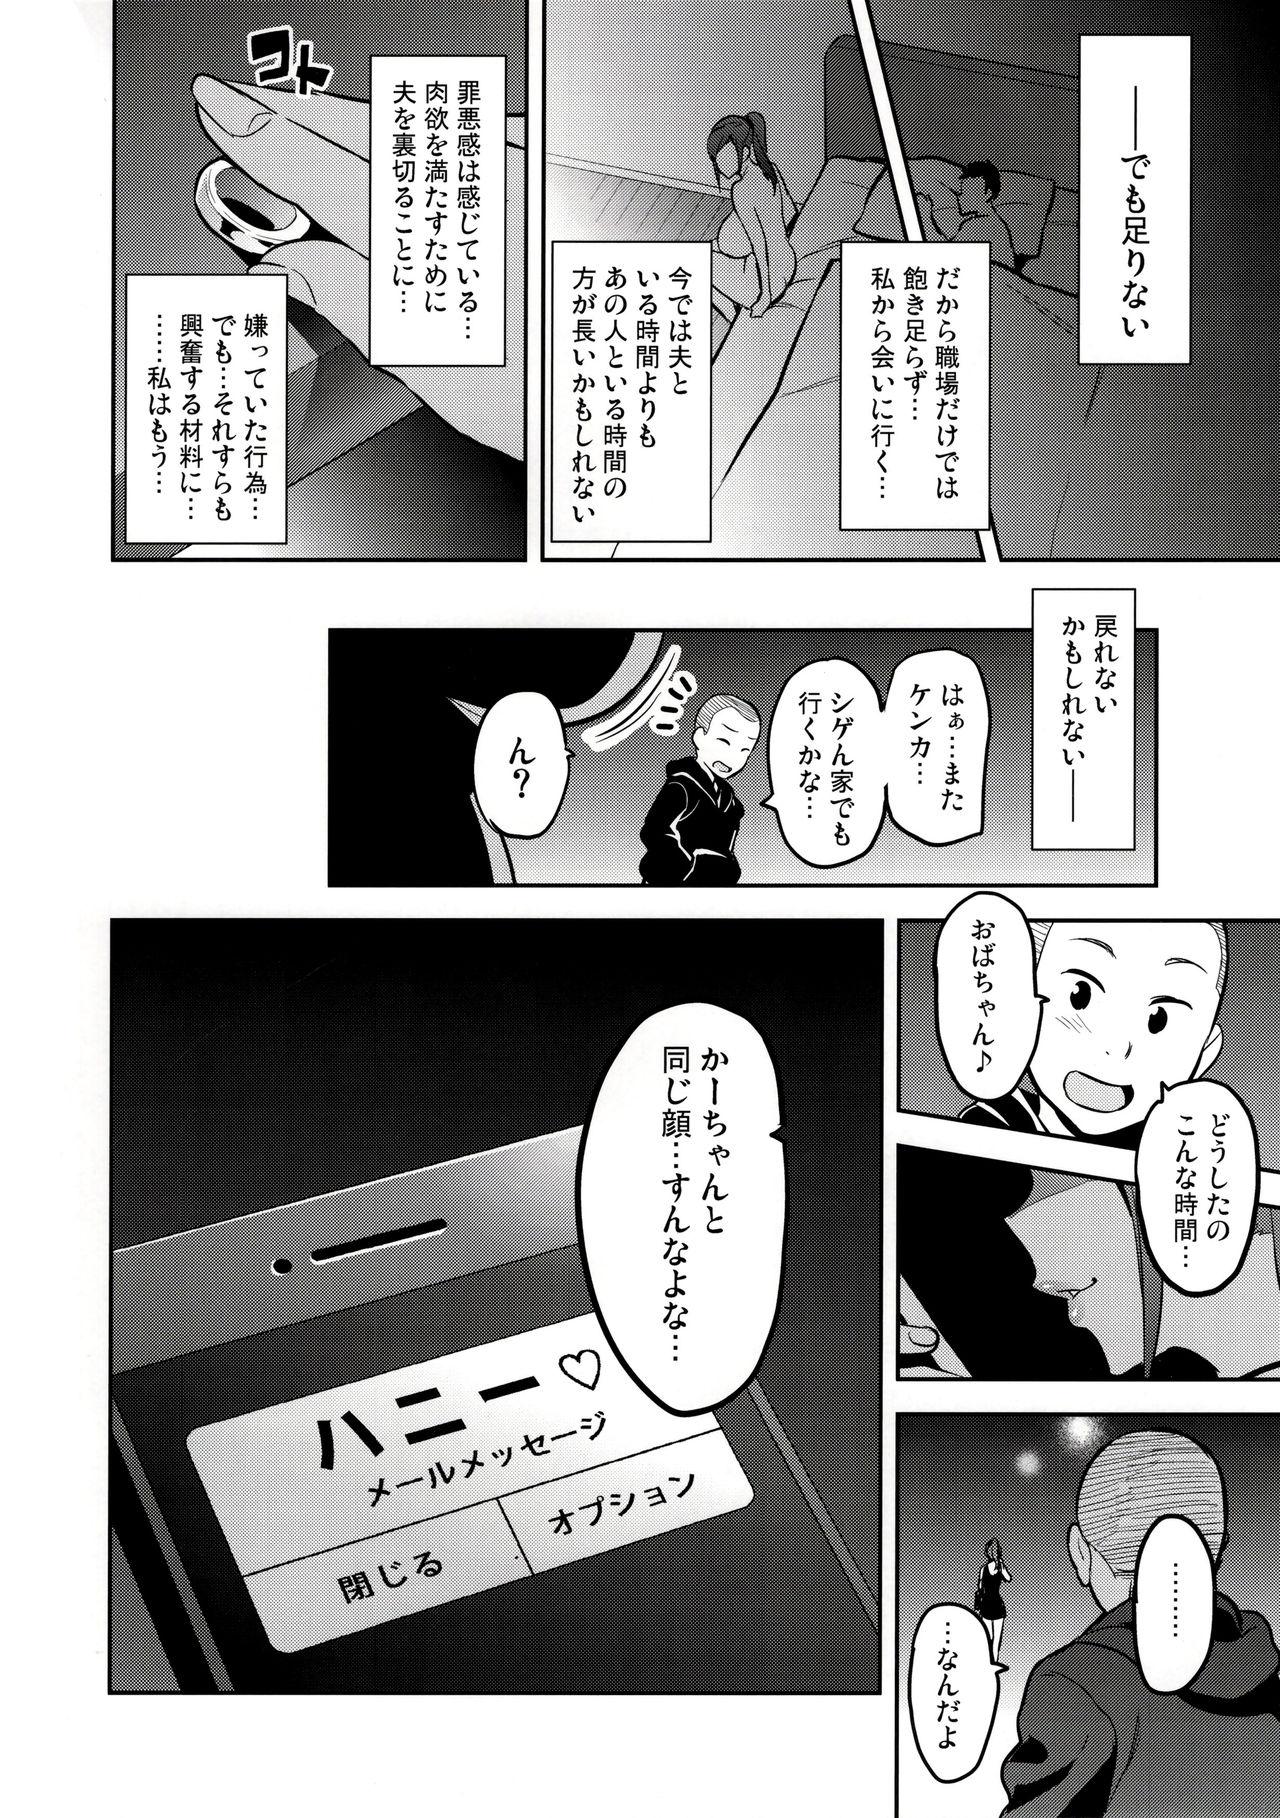 Himawari wa Yoru ni Saku Page 45 Of 46 hentai manga, Himawari wa ...